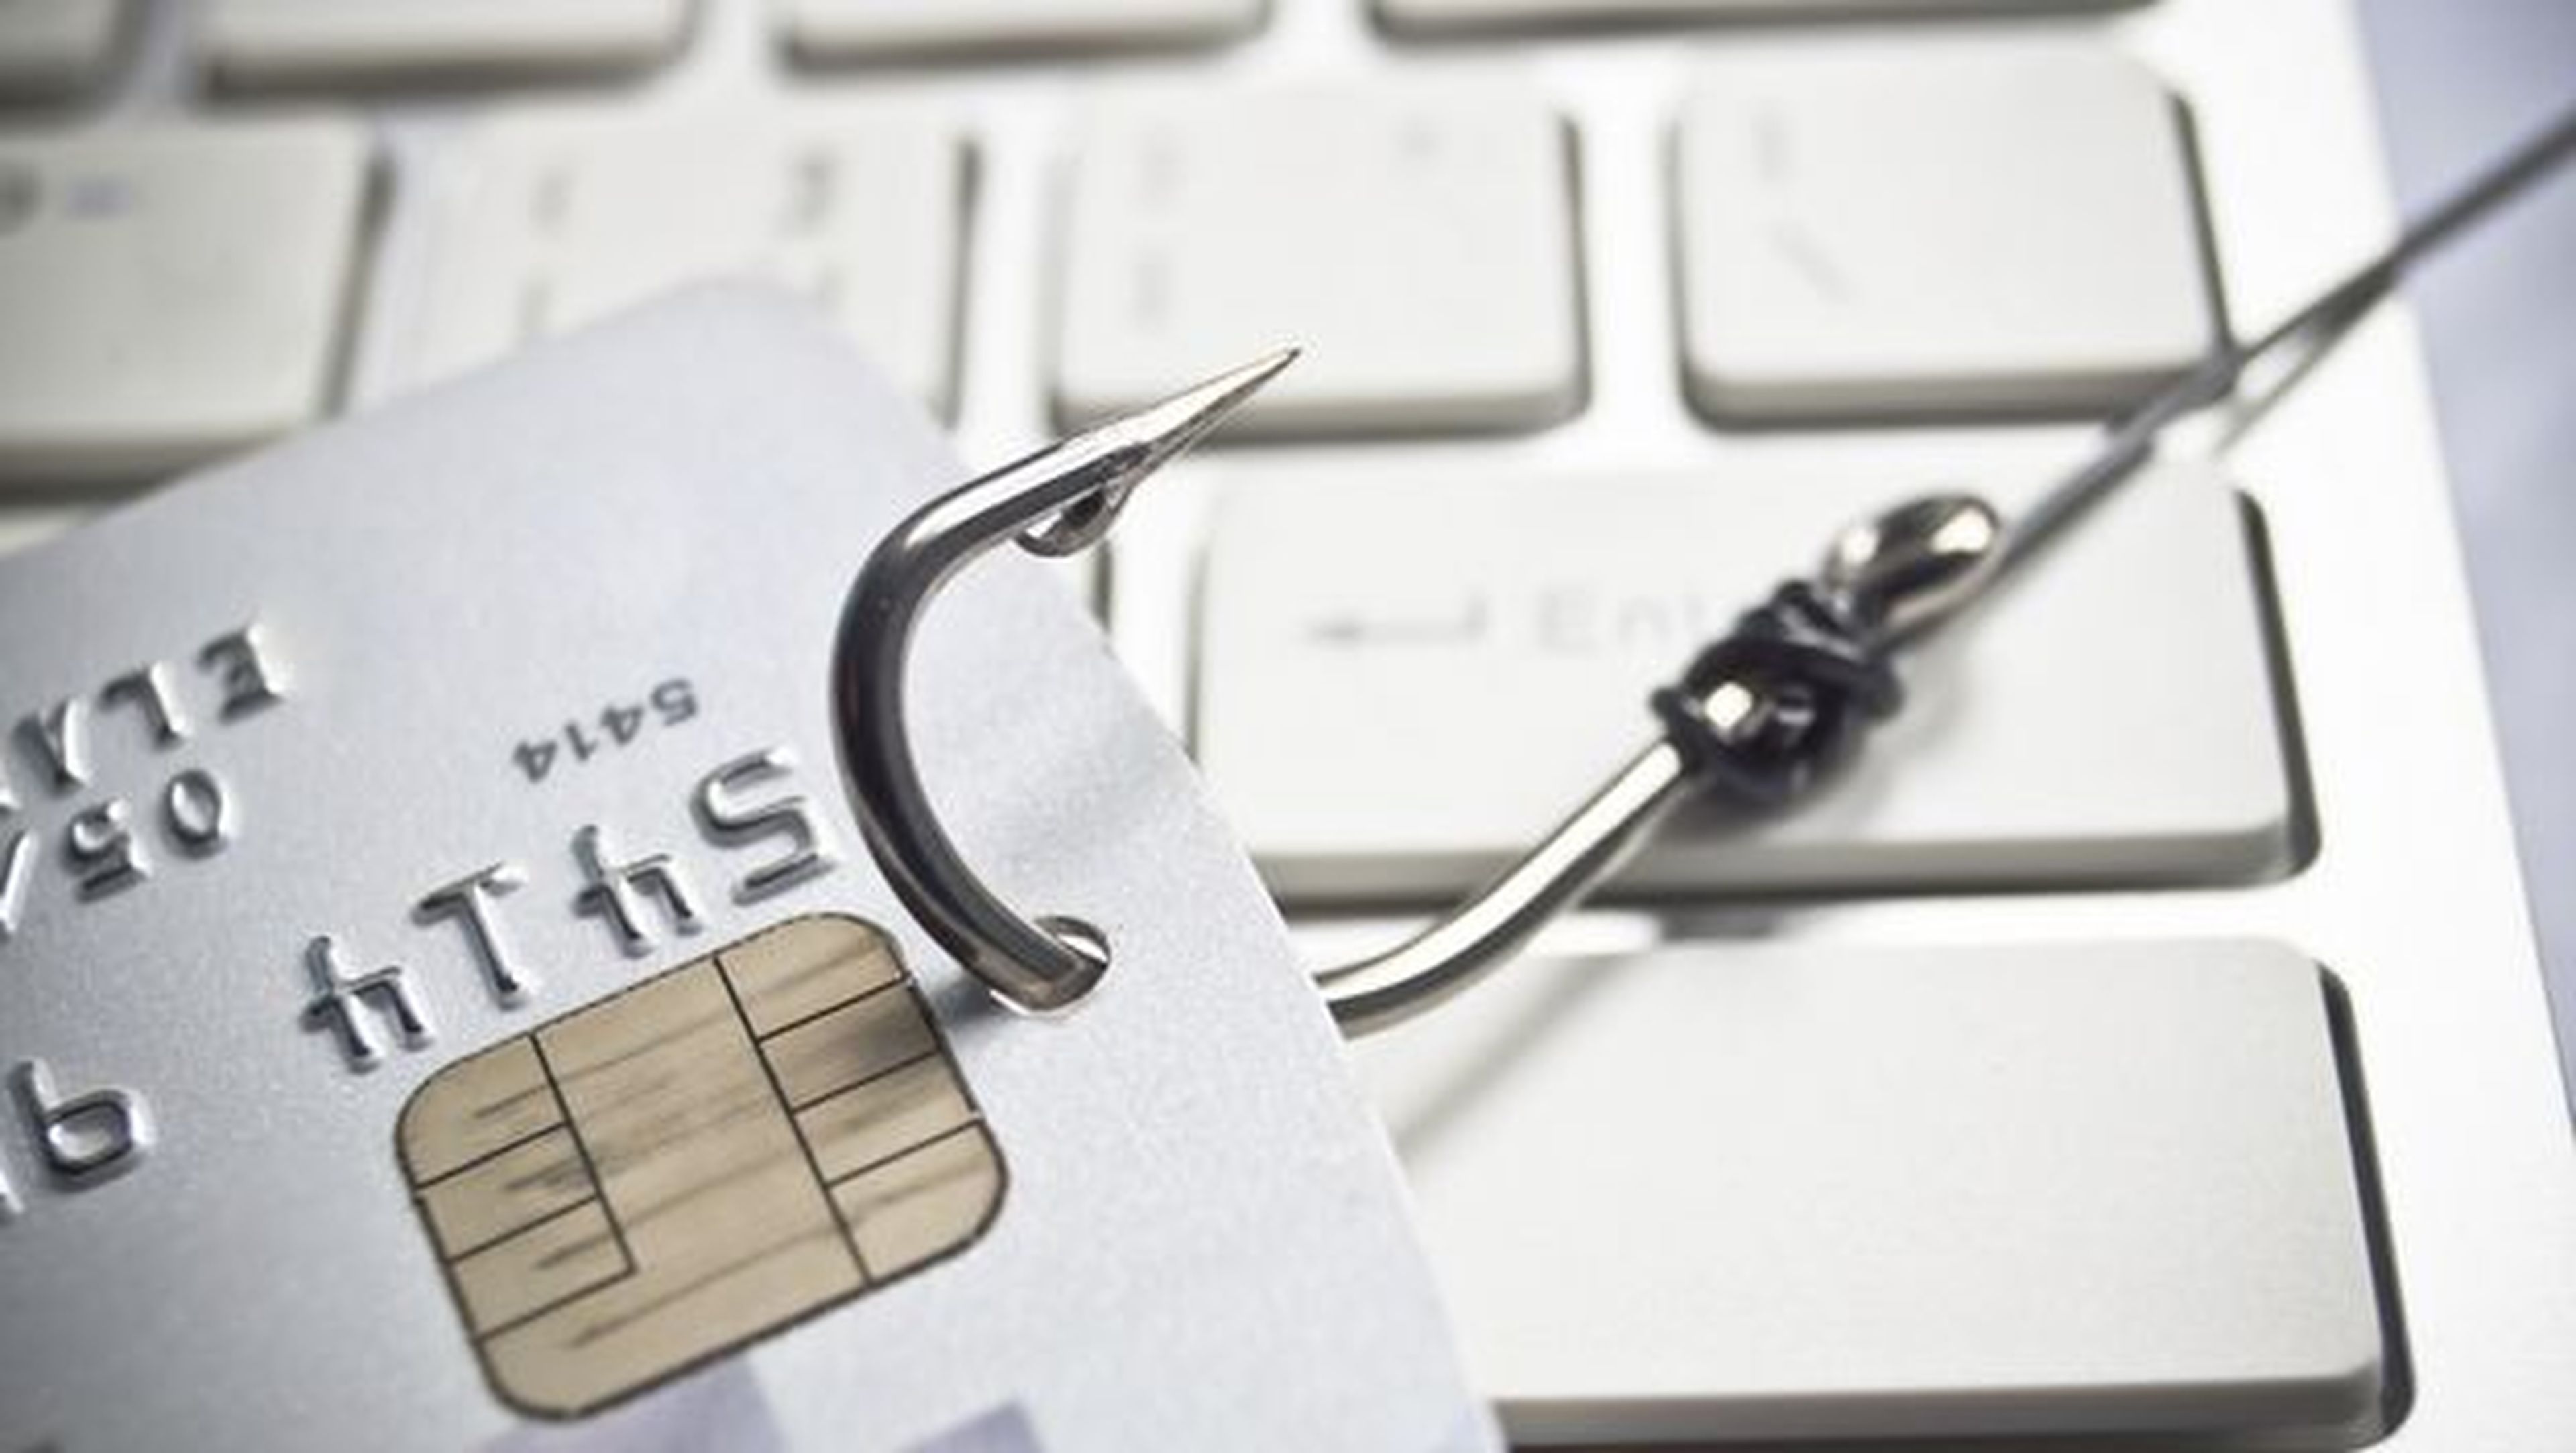 Un ataque de phishing roba datos de clientes del Santander